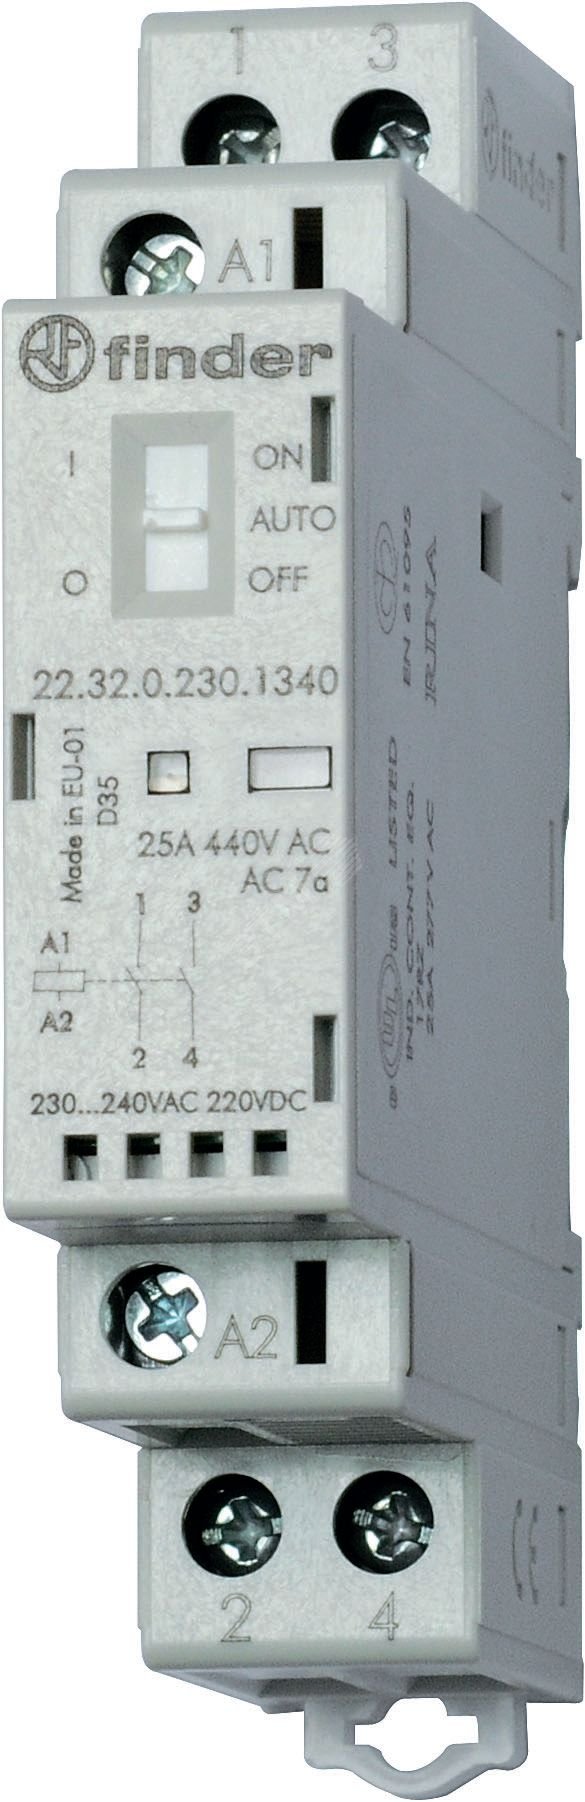 Модульный контактор, 2NO 25А, контакты AgSnO2, катушка 60В АС/DC, ширина 17.5мм, IP20, опции: переключатель Авто-Вкл-Выкл + мех.индикатор + LED 22.32.0.060.4340 FINDER